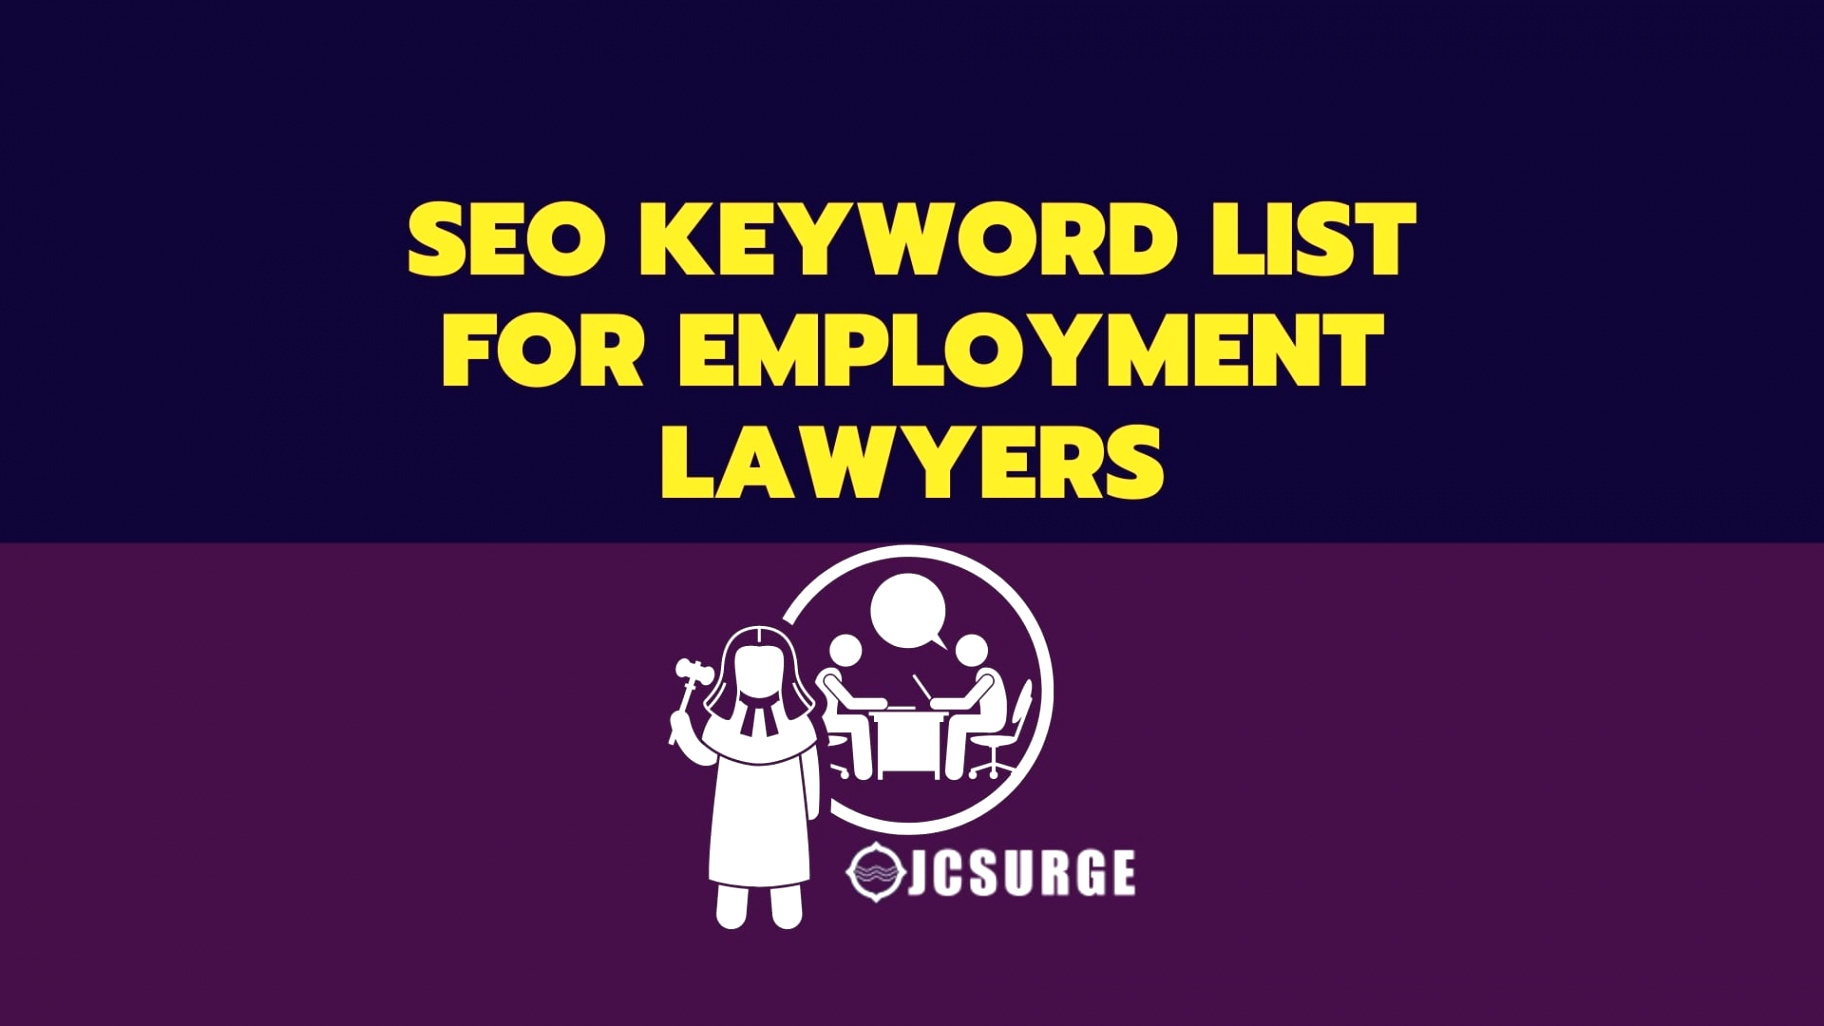 employment lawyers keywords list